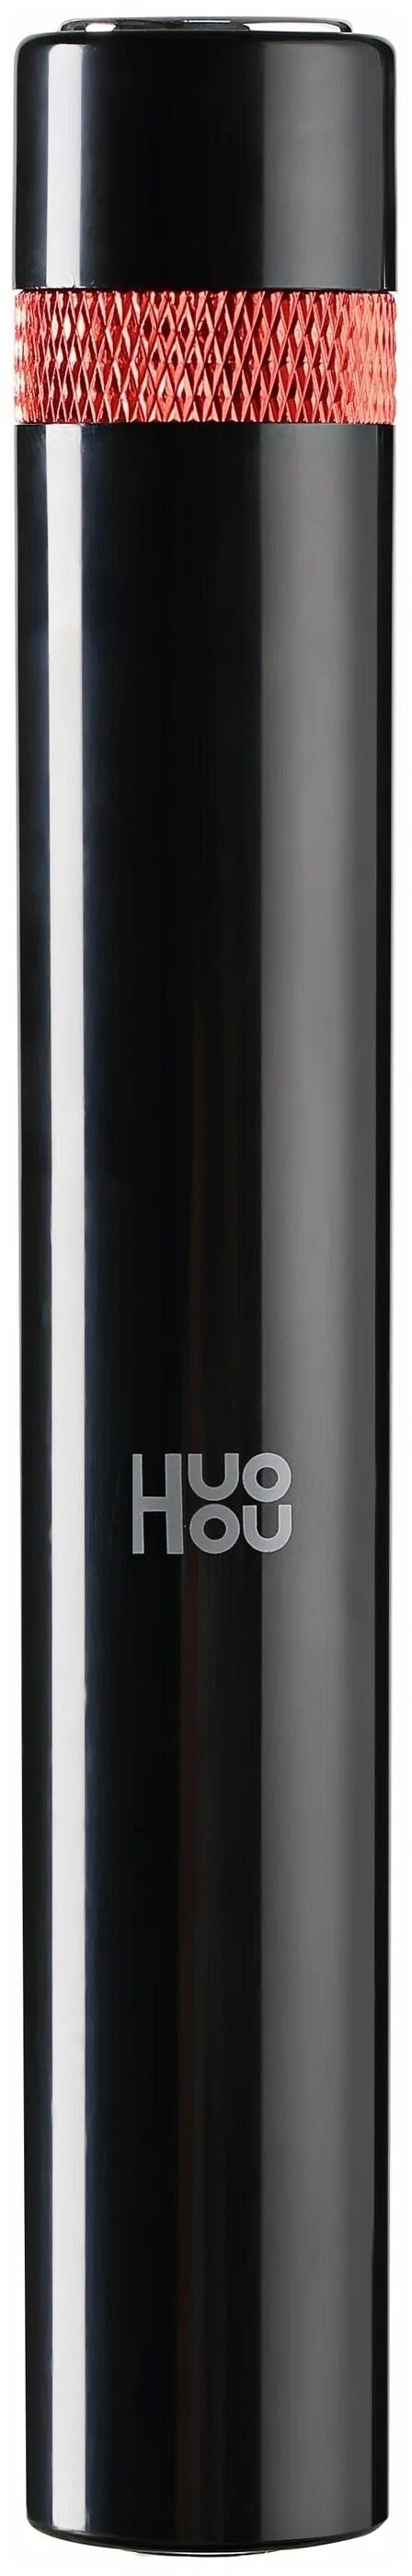 Портативная пневматическая открывалка бутылок Xiaomi Huohou Portable Pneumatic Bottle Opener HU0247